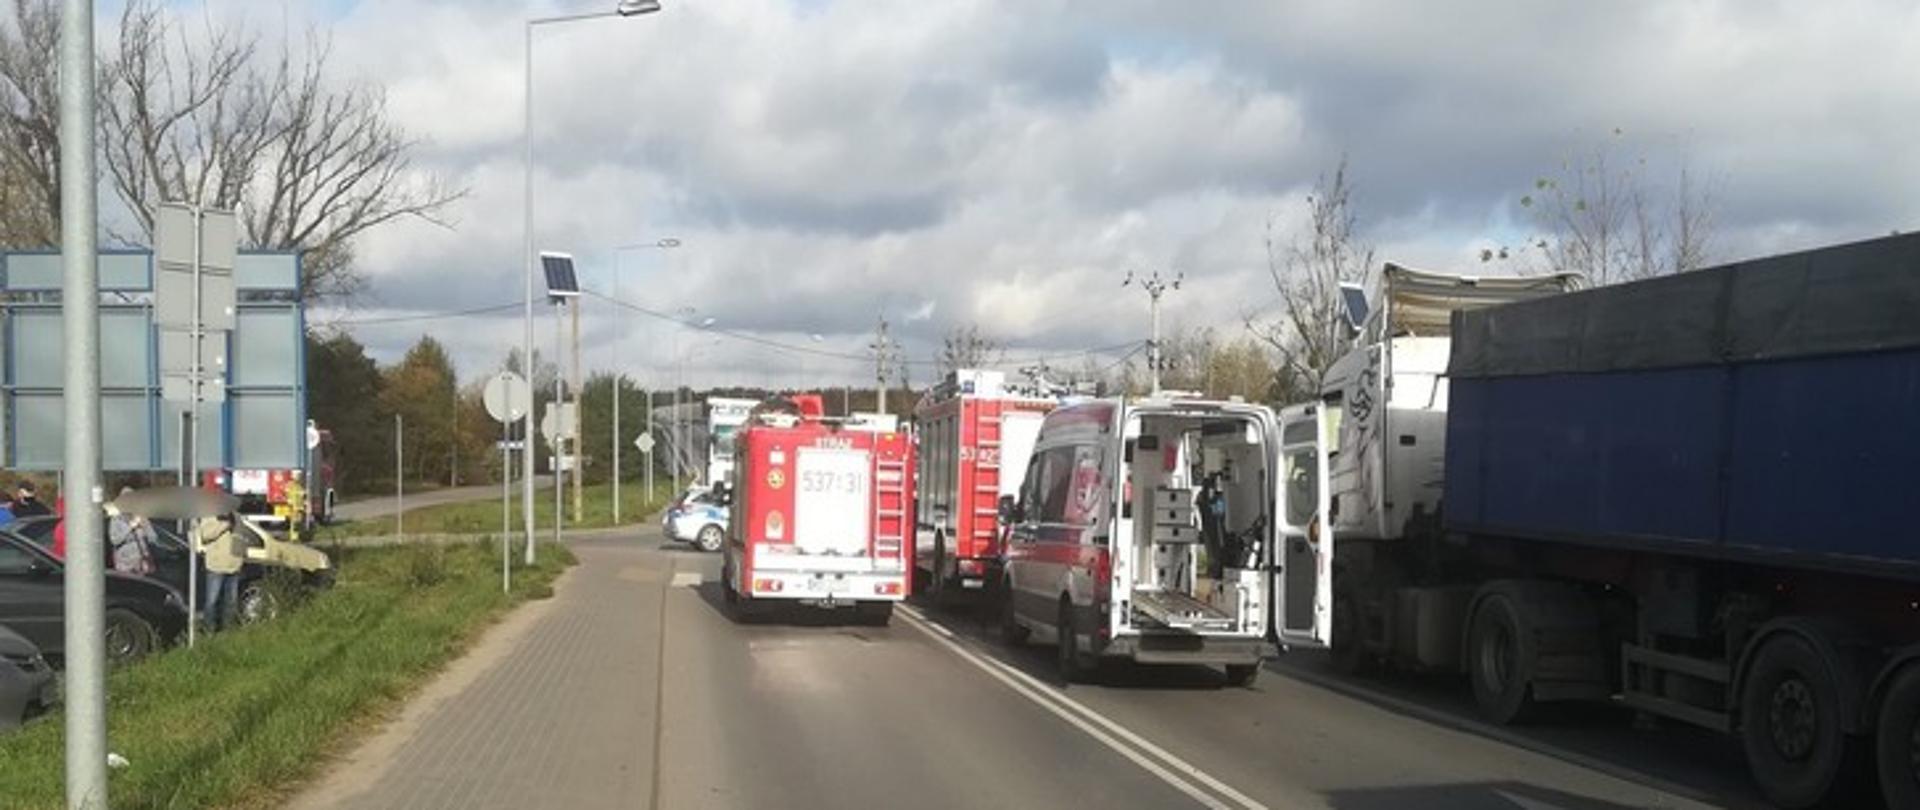 Zdjęcie przedstawia ulicę Leśną w Nowym Dworze Mazowieckim, na której znajdują się: pojazdy straży pożarnej, karetka pogotowia ratunkowego oraz samochód ciężarowy, który uległ wypadkowi.